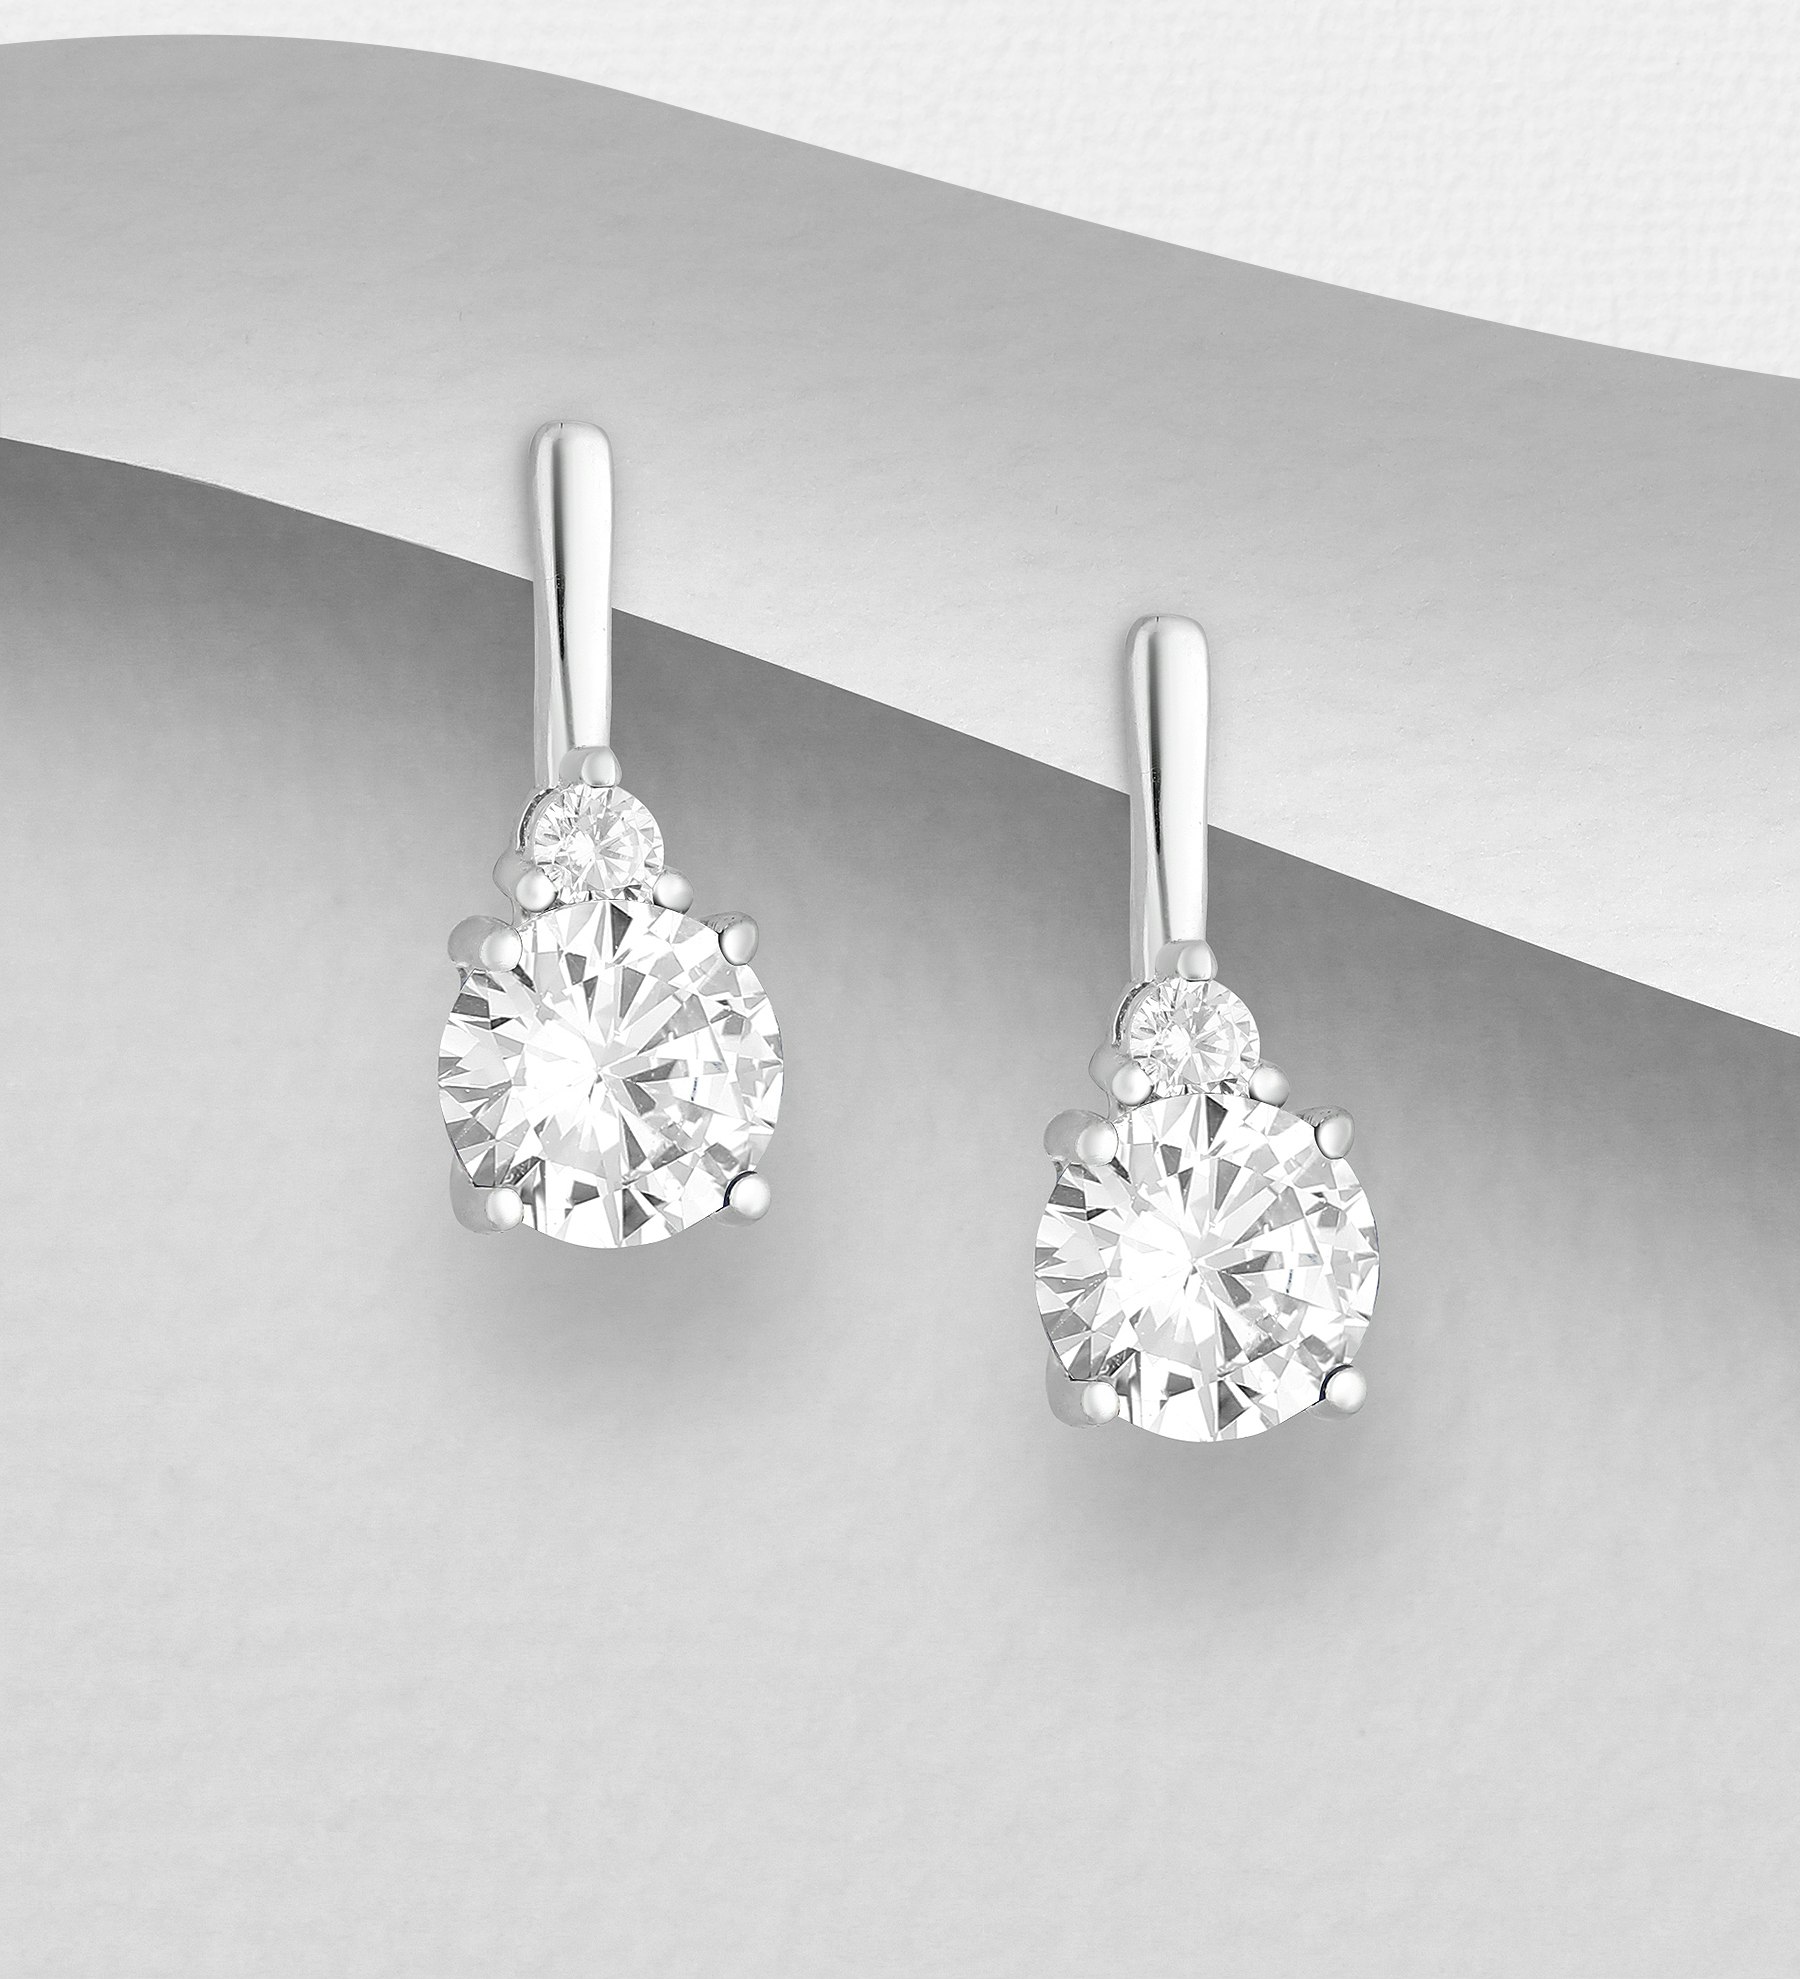 Silverörhängen elegant design med runda stenar - stilfulla örhängen till tjej/ dam i äkta 925 sterling silver